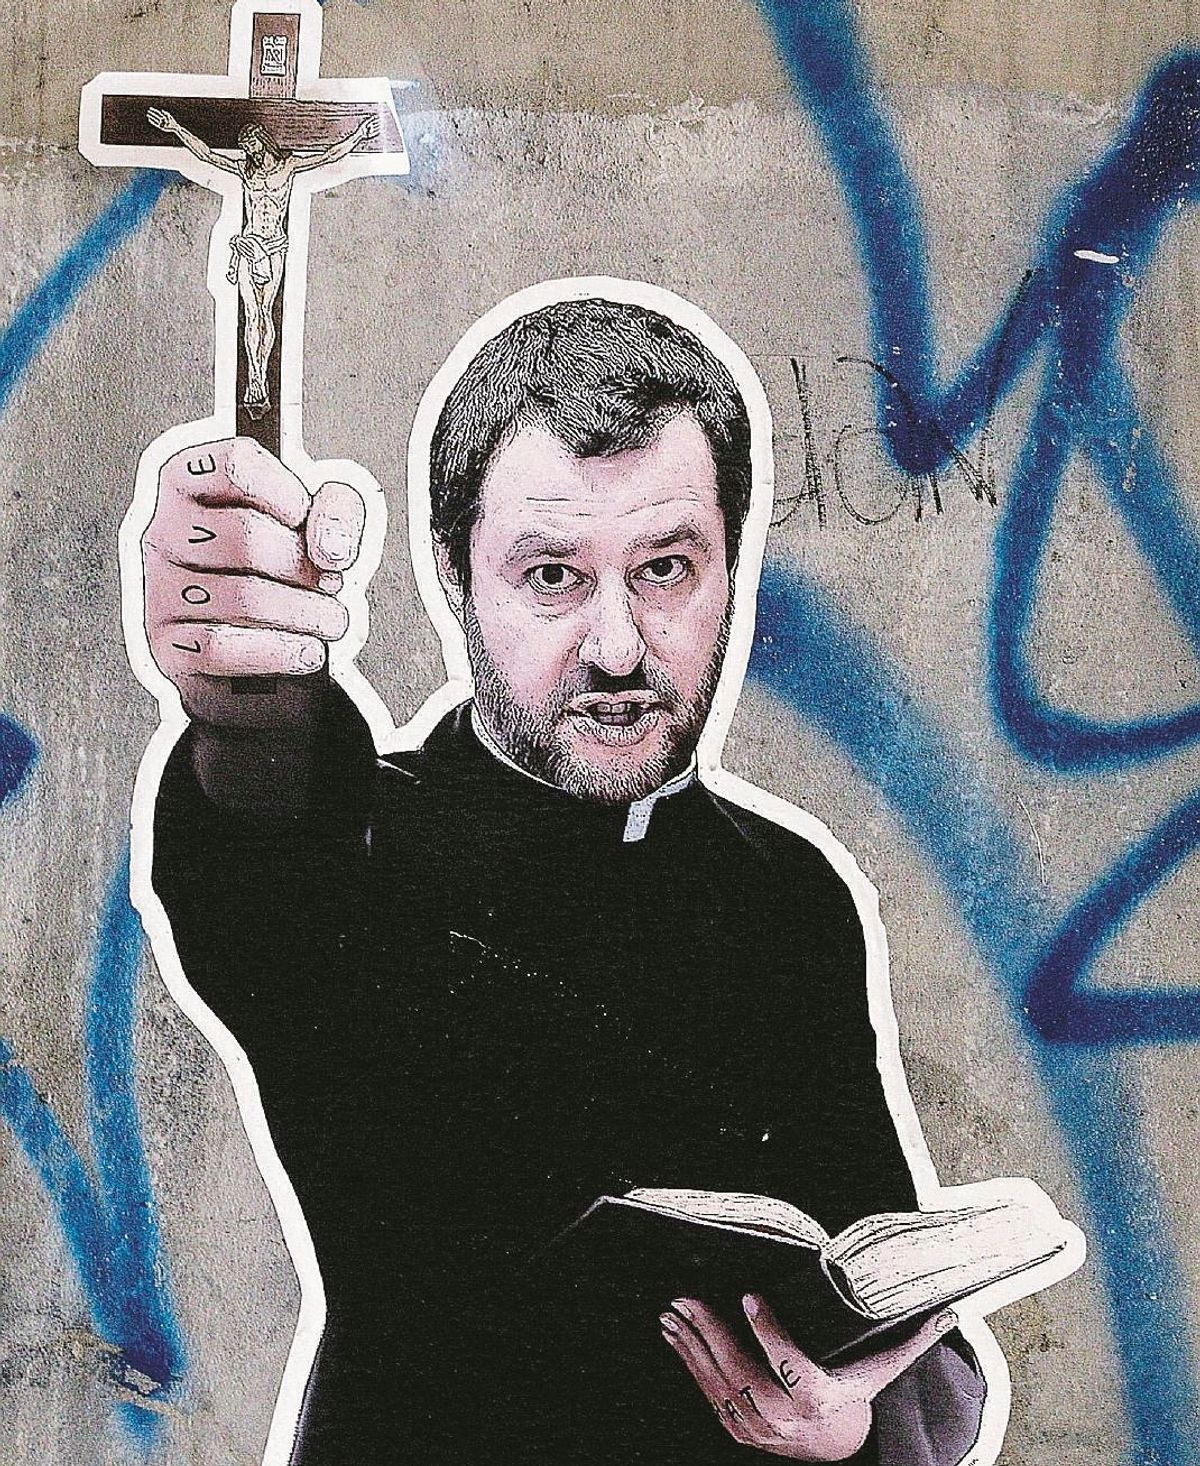 Ma sui temi religiosi Salvini deve passare dalle preghiere alle azioni concrete